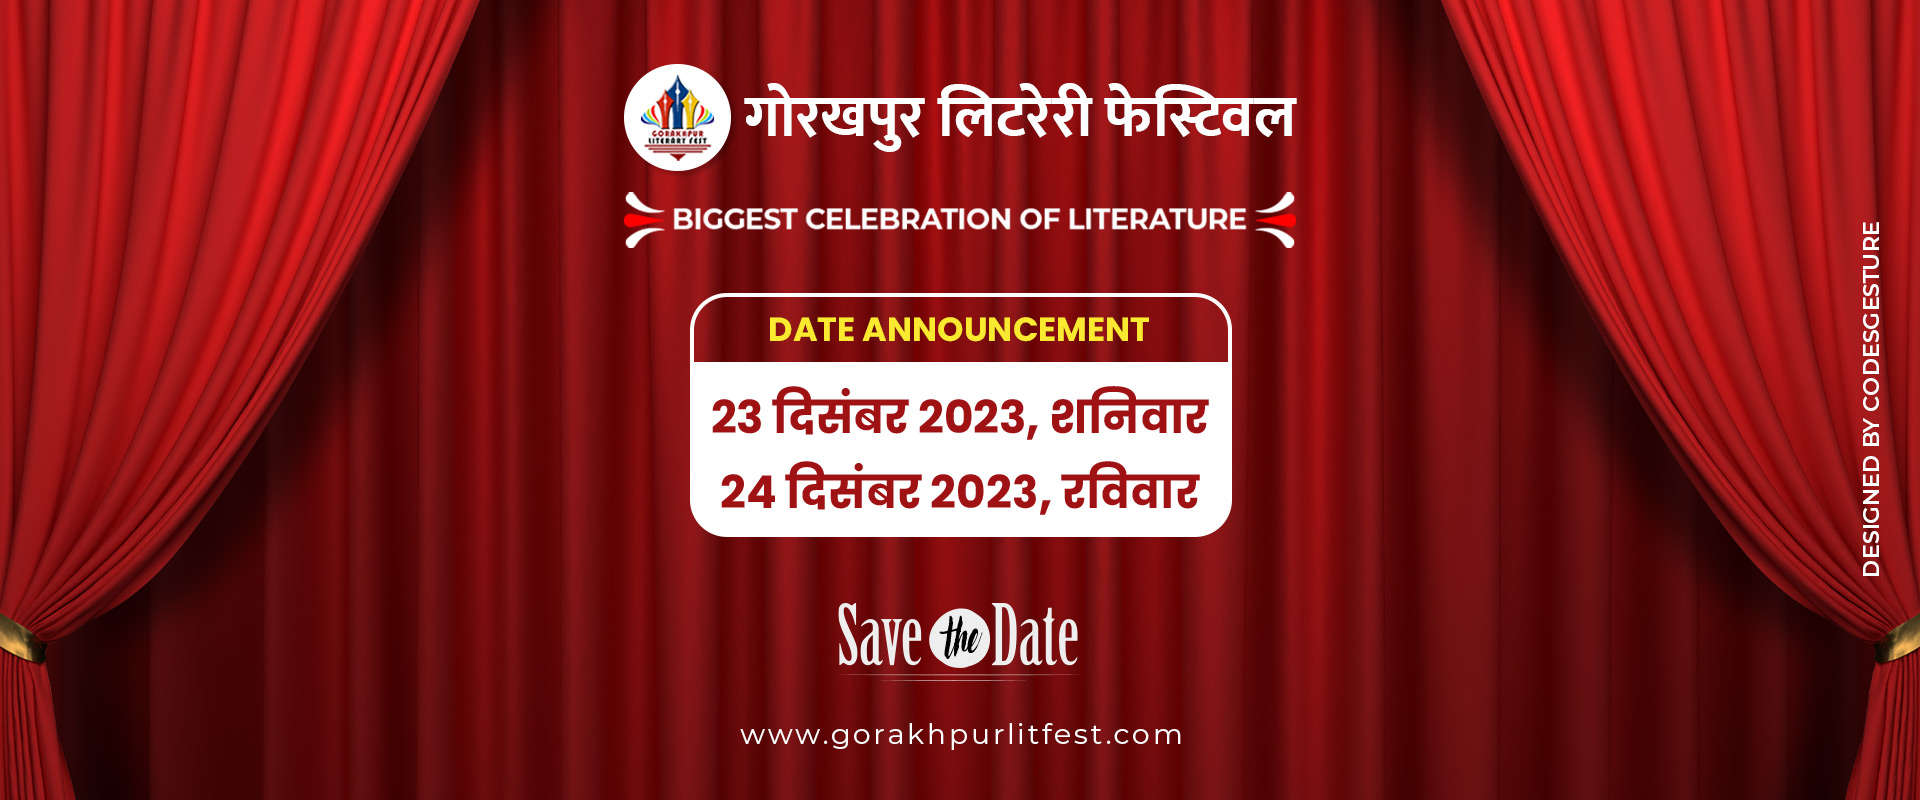 गोरखपुर लिटरेरी फेस्टिवल 2023 में जुटेंगी देश की साहित्य, सांस्कृतिक और कला की दिग्गज हस्तियां।